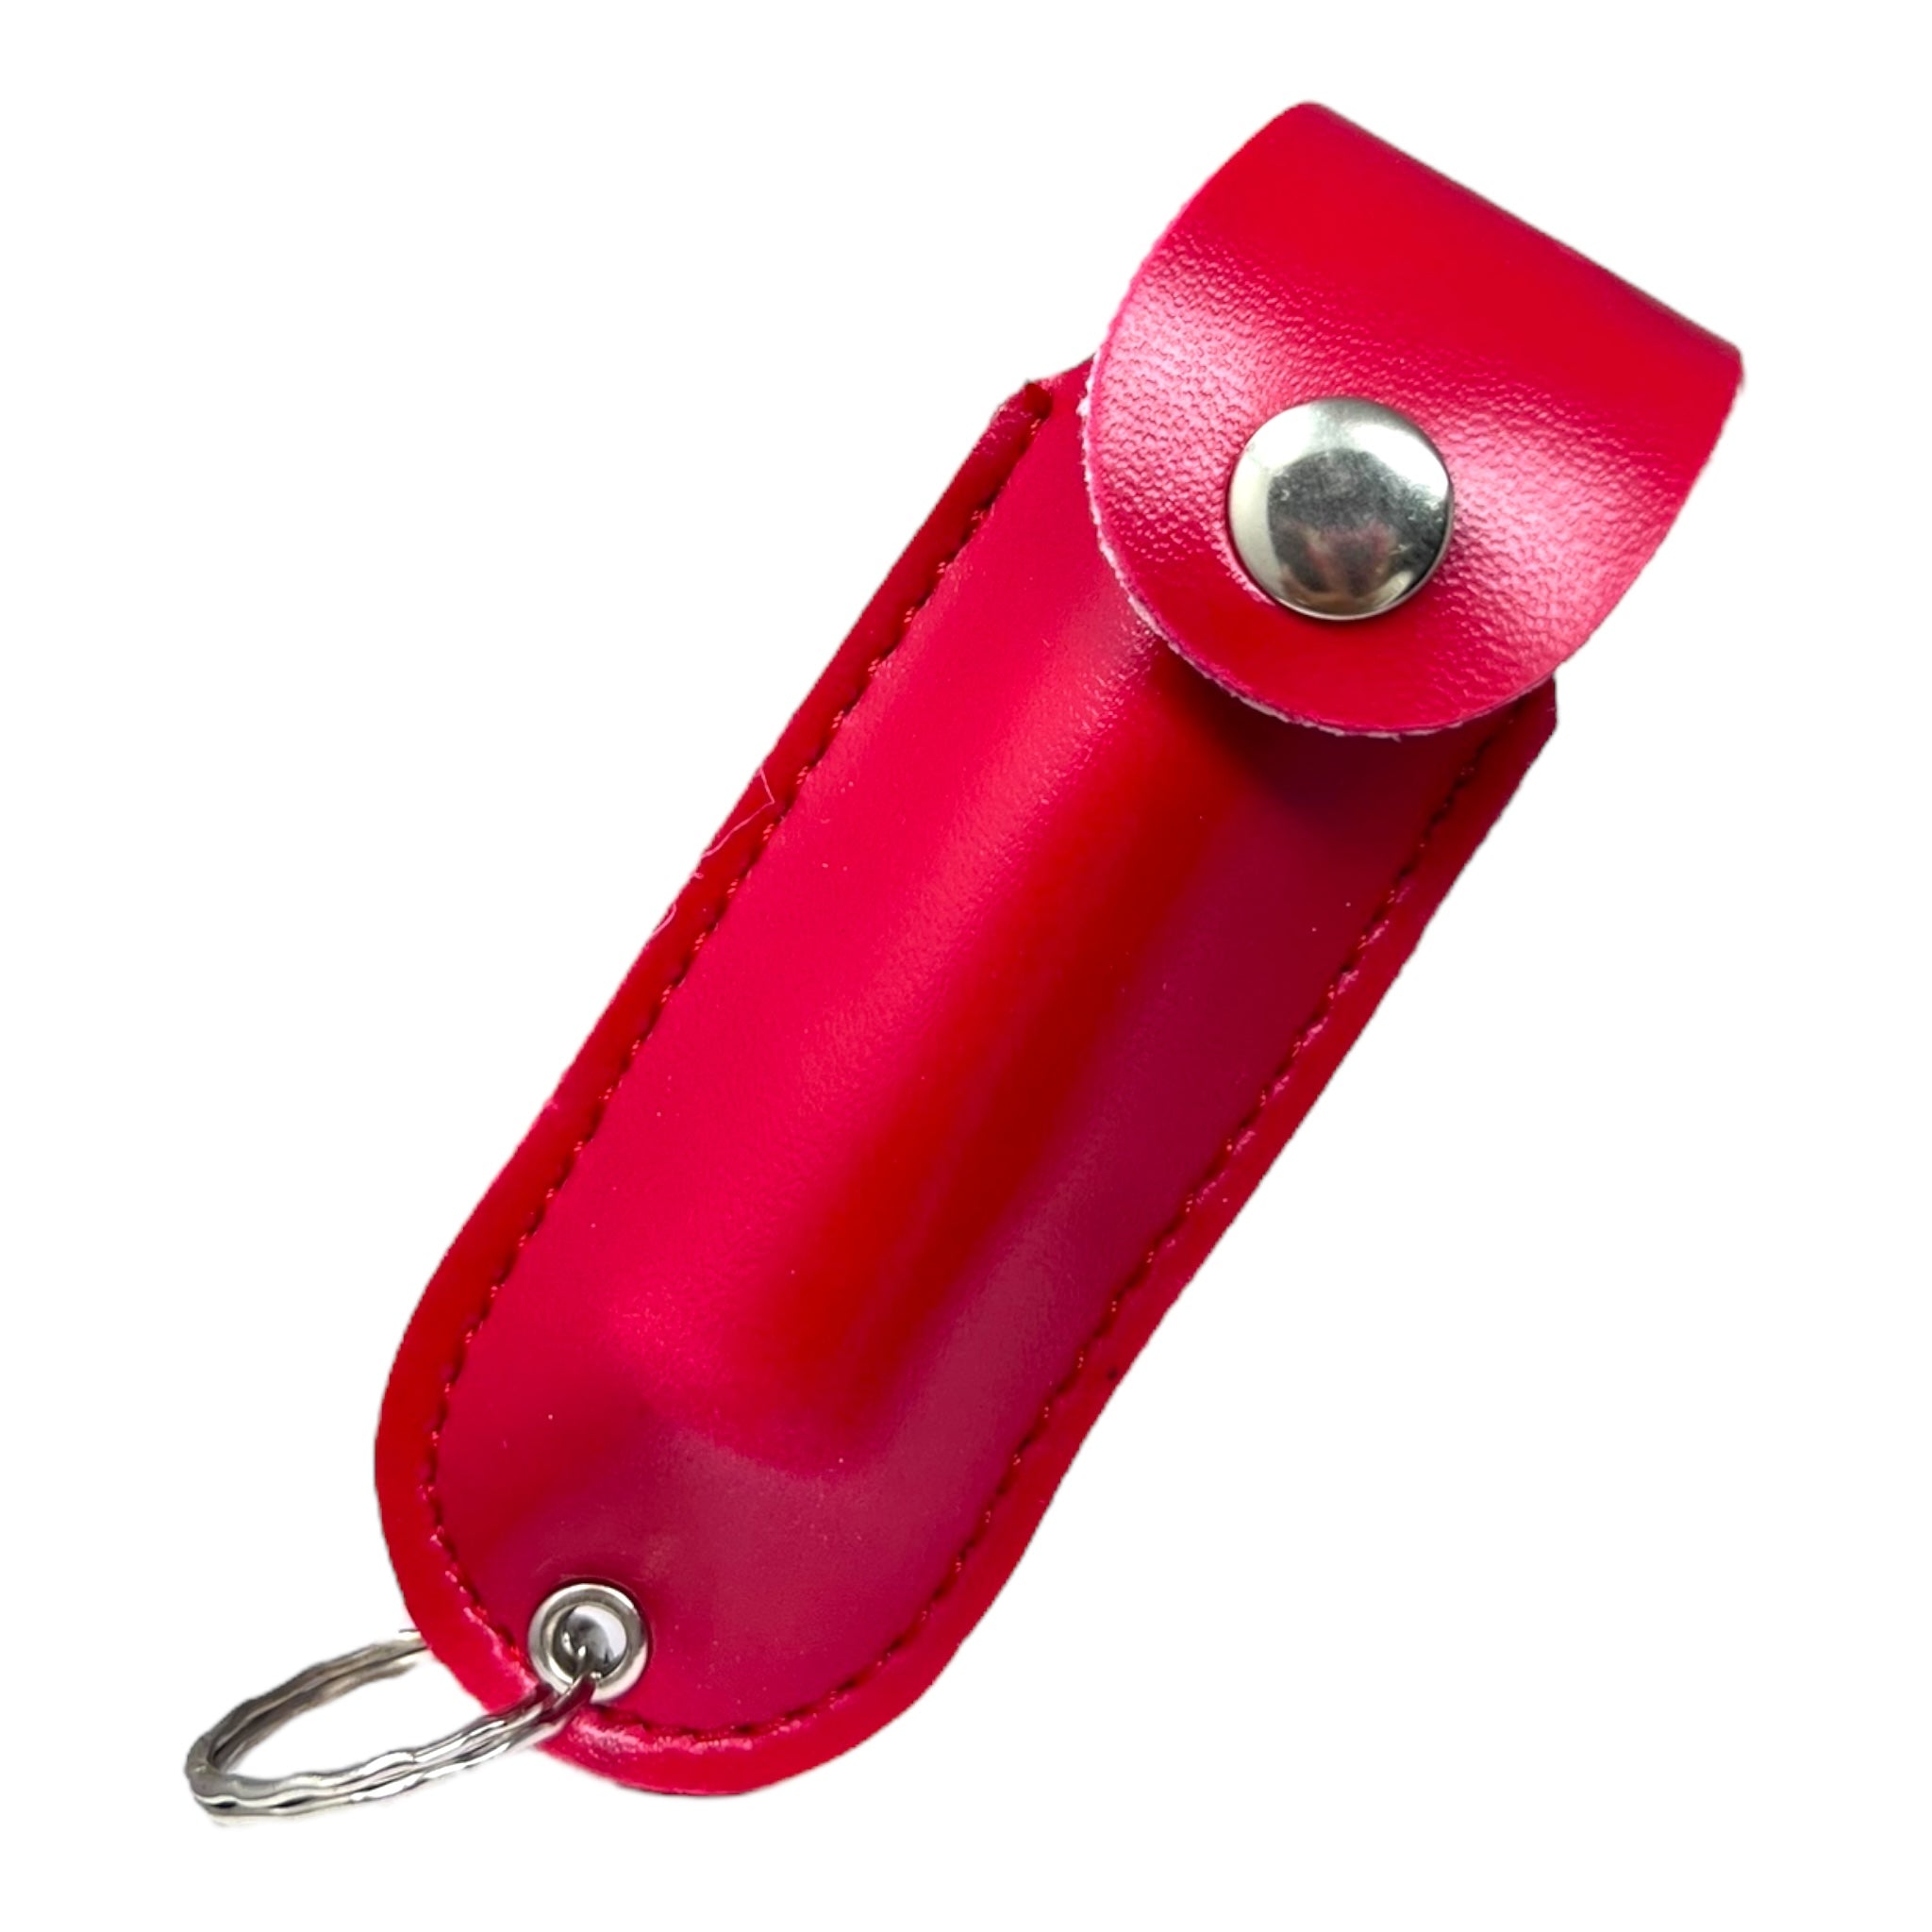 Guard Dog Stylish Key Chain Pepper Spray